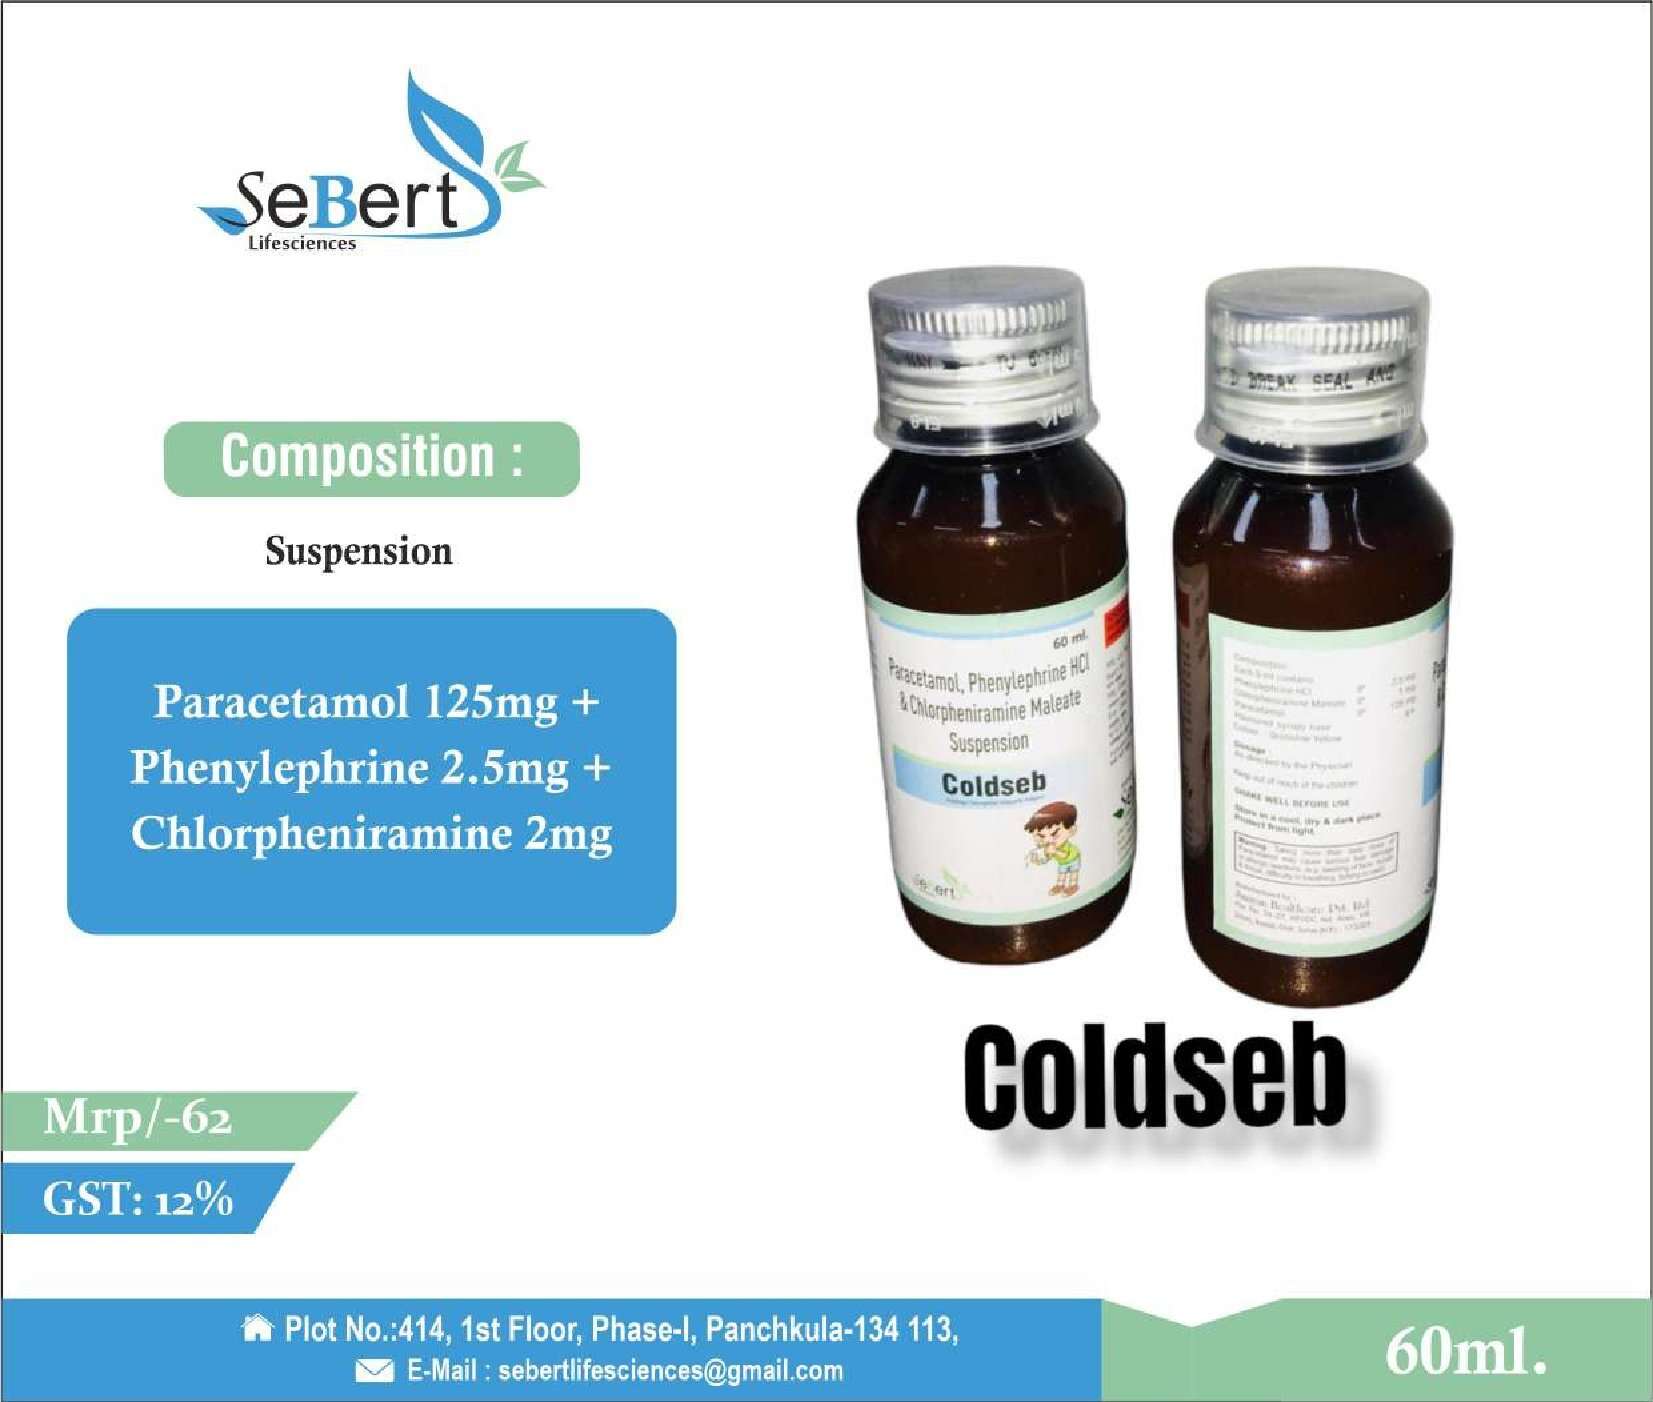 paracetamol 125mg + phenylephrine 2.5mg + chlorpheniramine 2mg